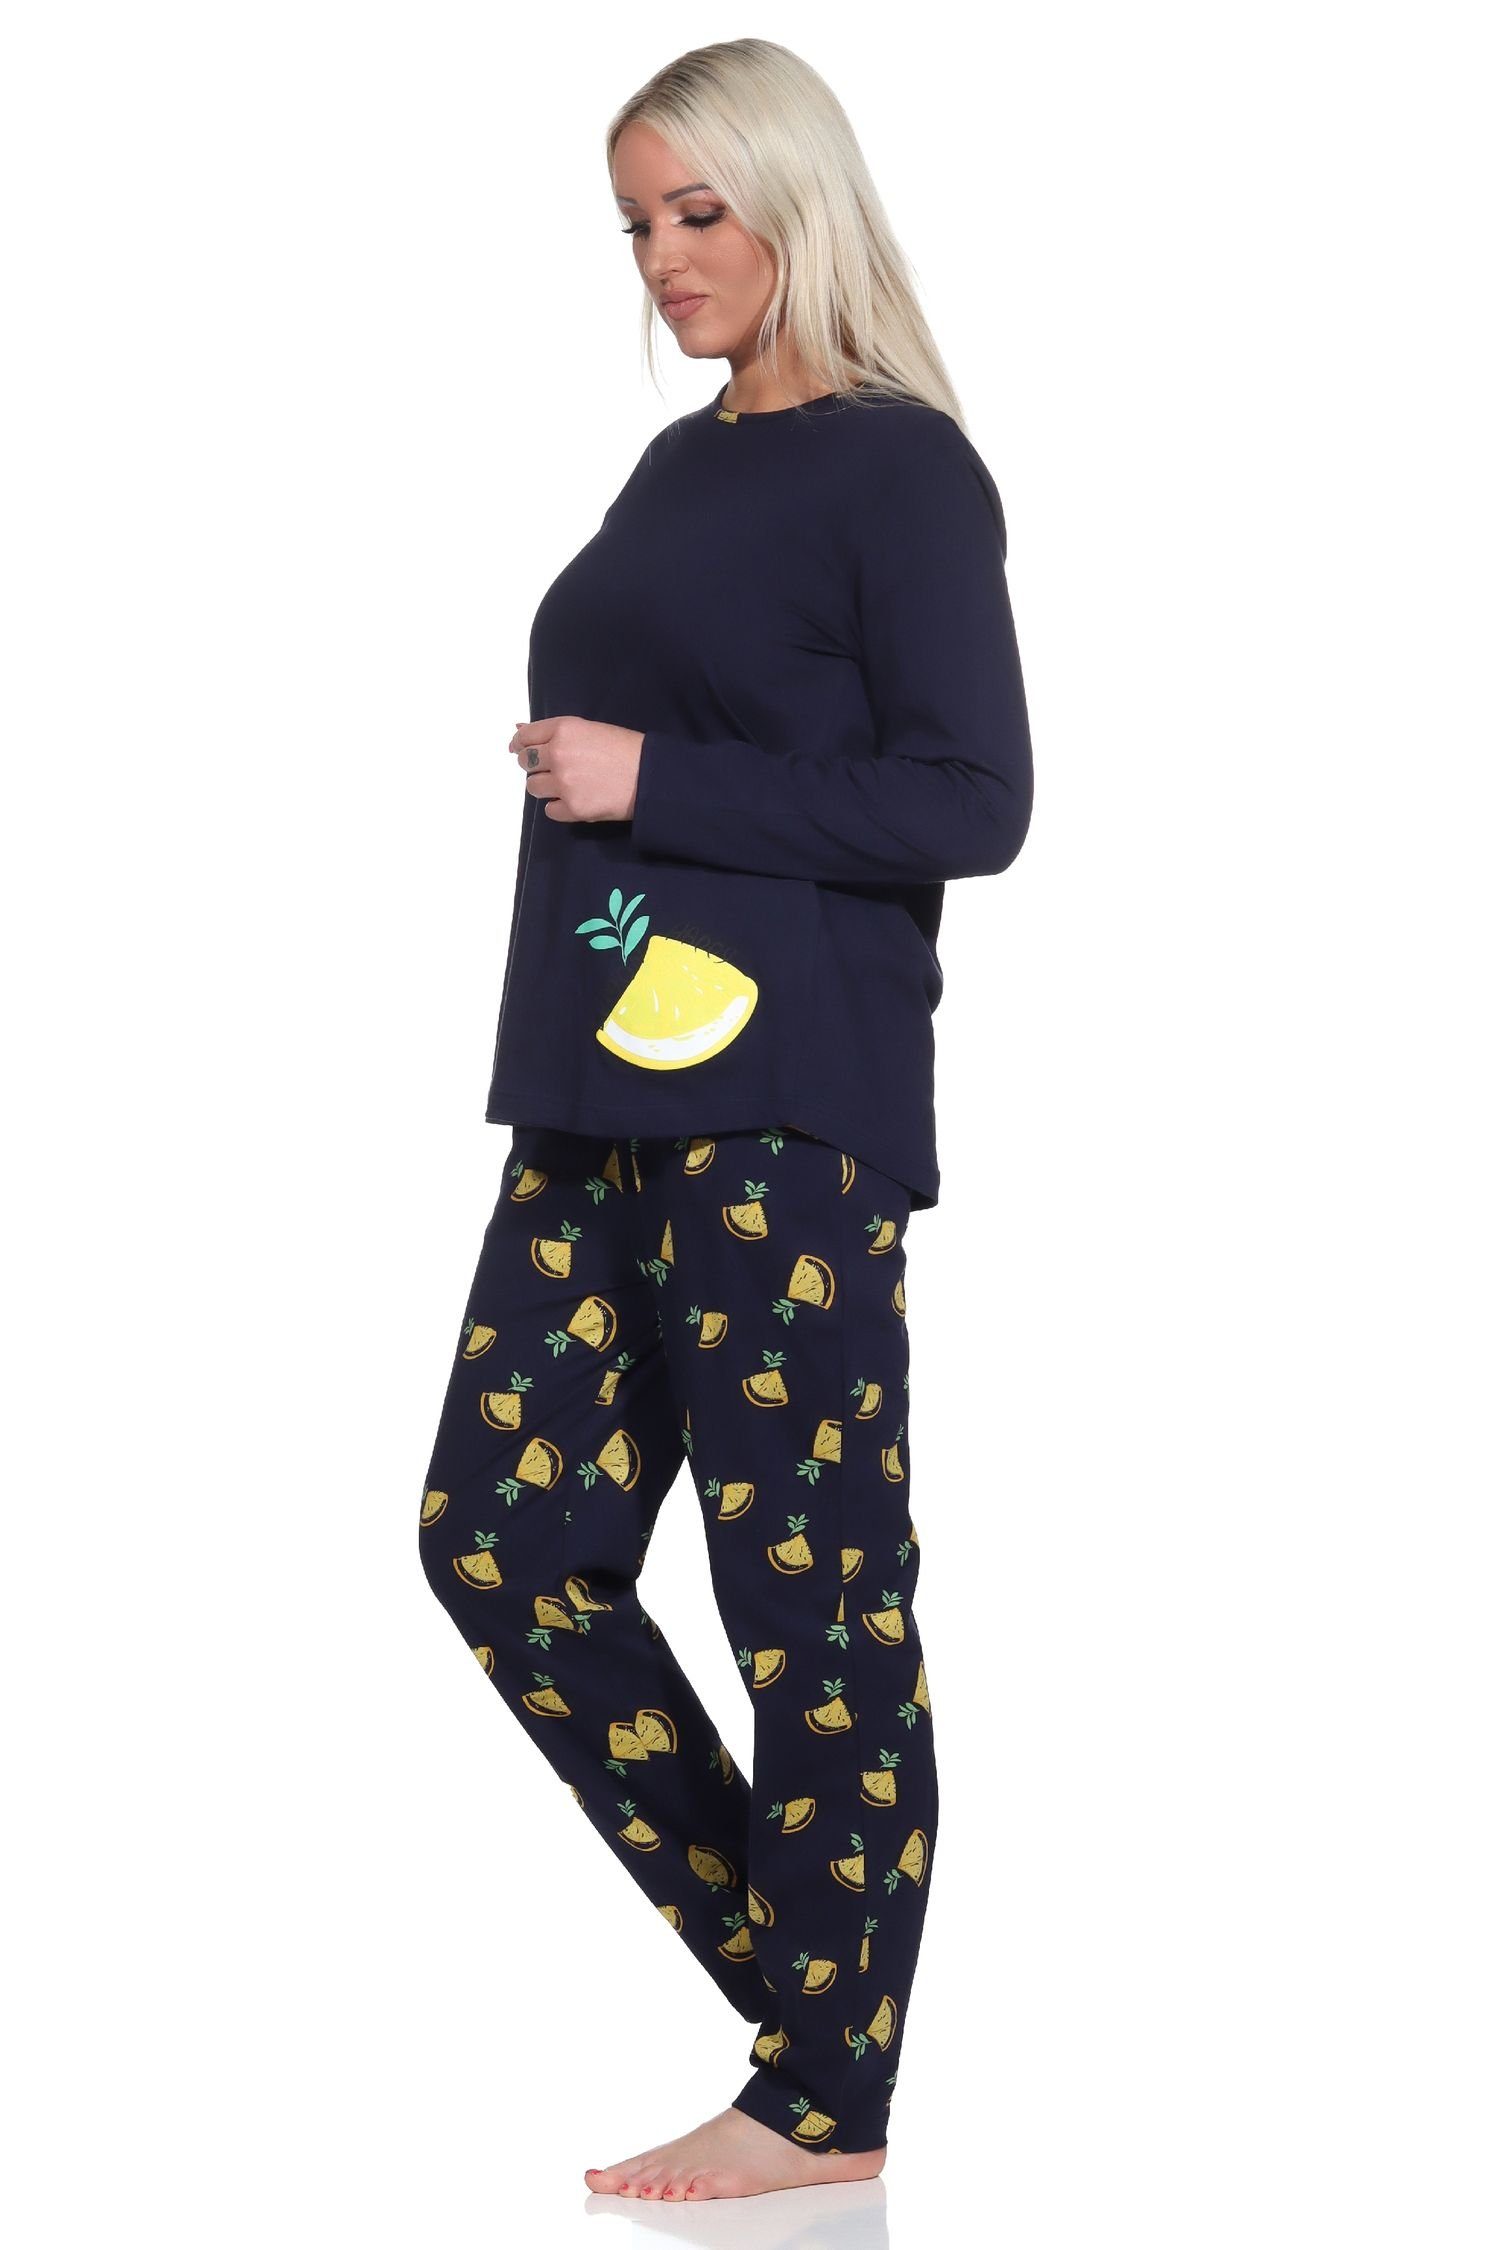 Damen Süsser mit Pyjama Schlafanzug Motiv Normann Pyjama Zitronen marine als langarm